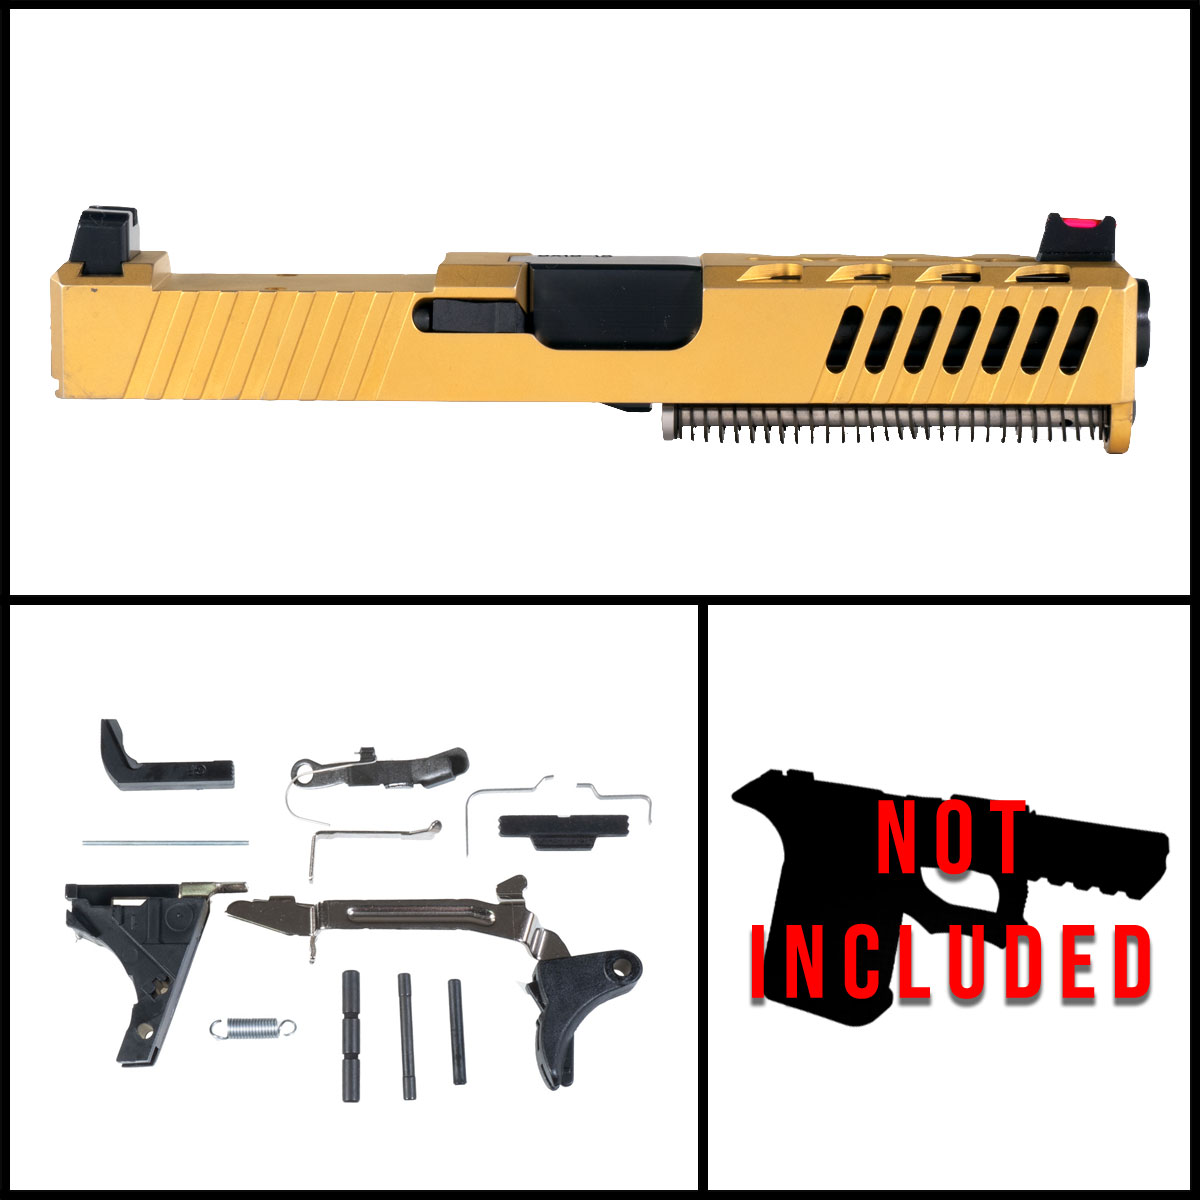 DTT 'Element 79' 9mm Full Pistol Build Kit (Everything Minus Frame) - Glock 19 Compatible